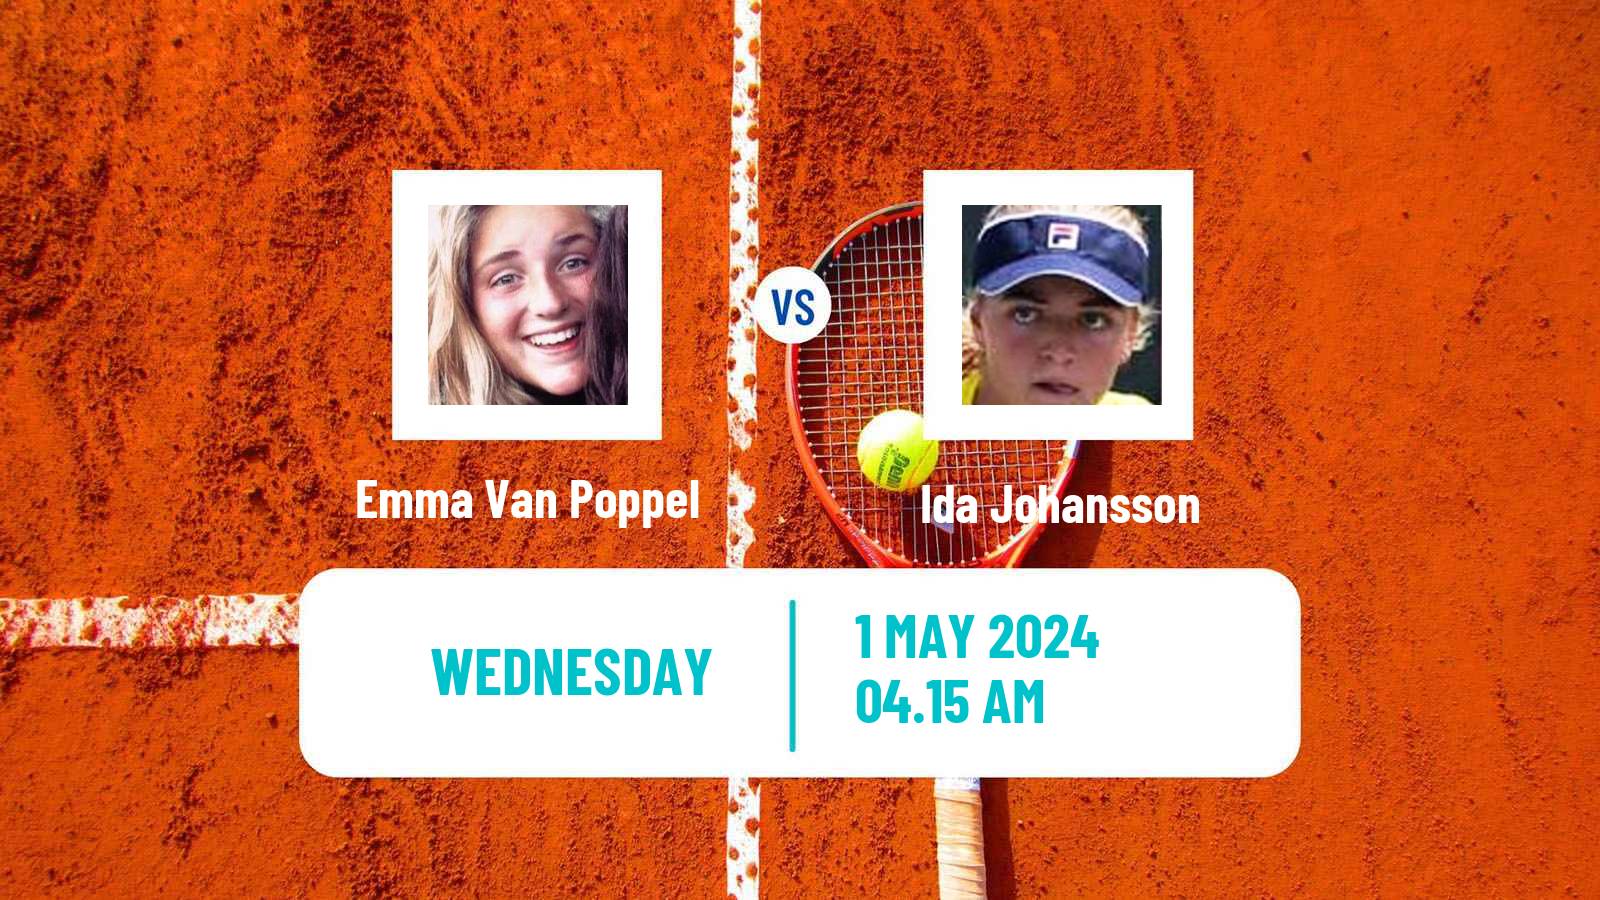 Tennis ITF W15 Varberg Women Emma Van Poppel - Ida Johansson